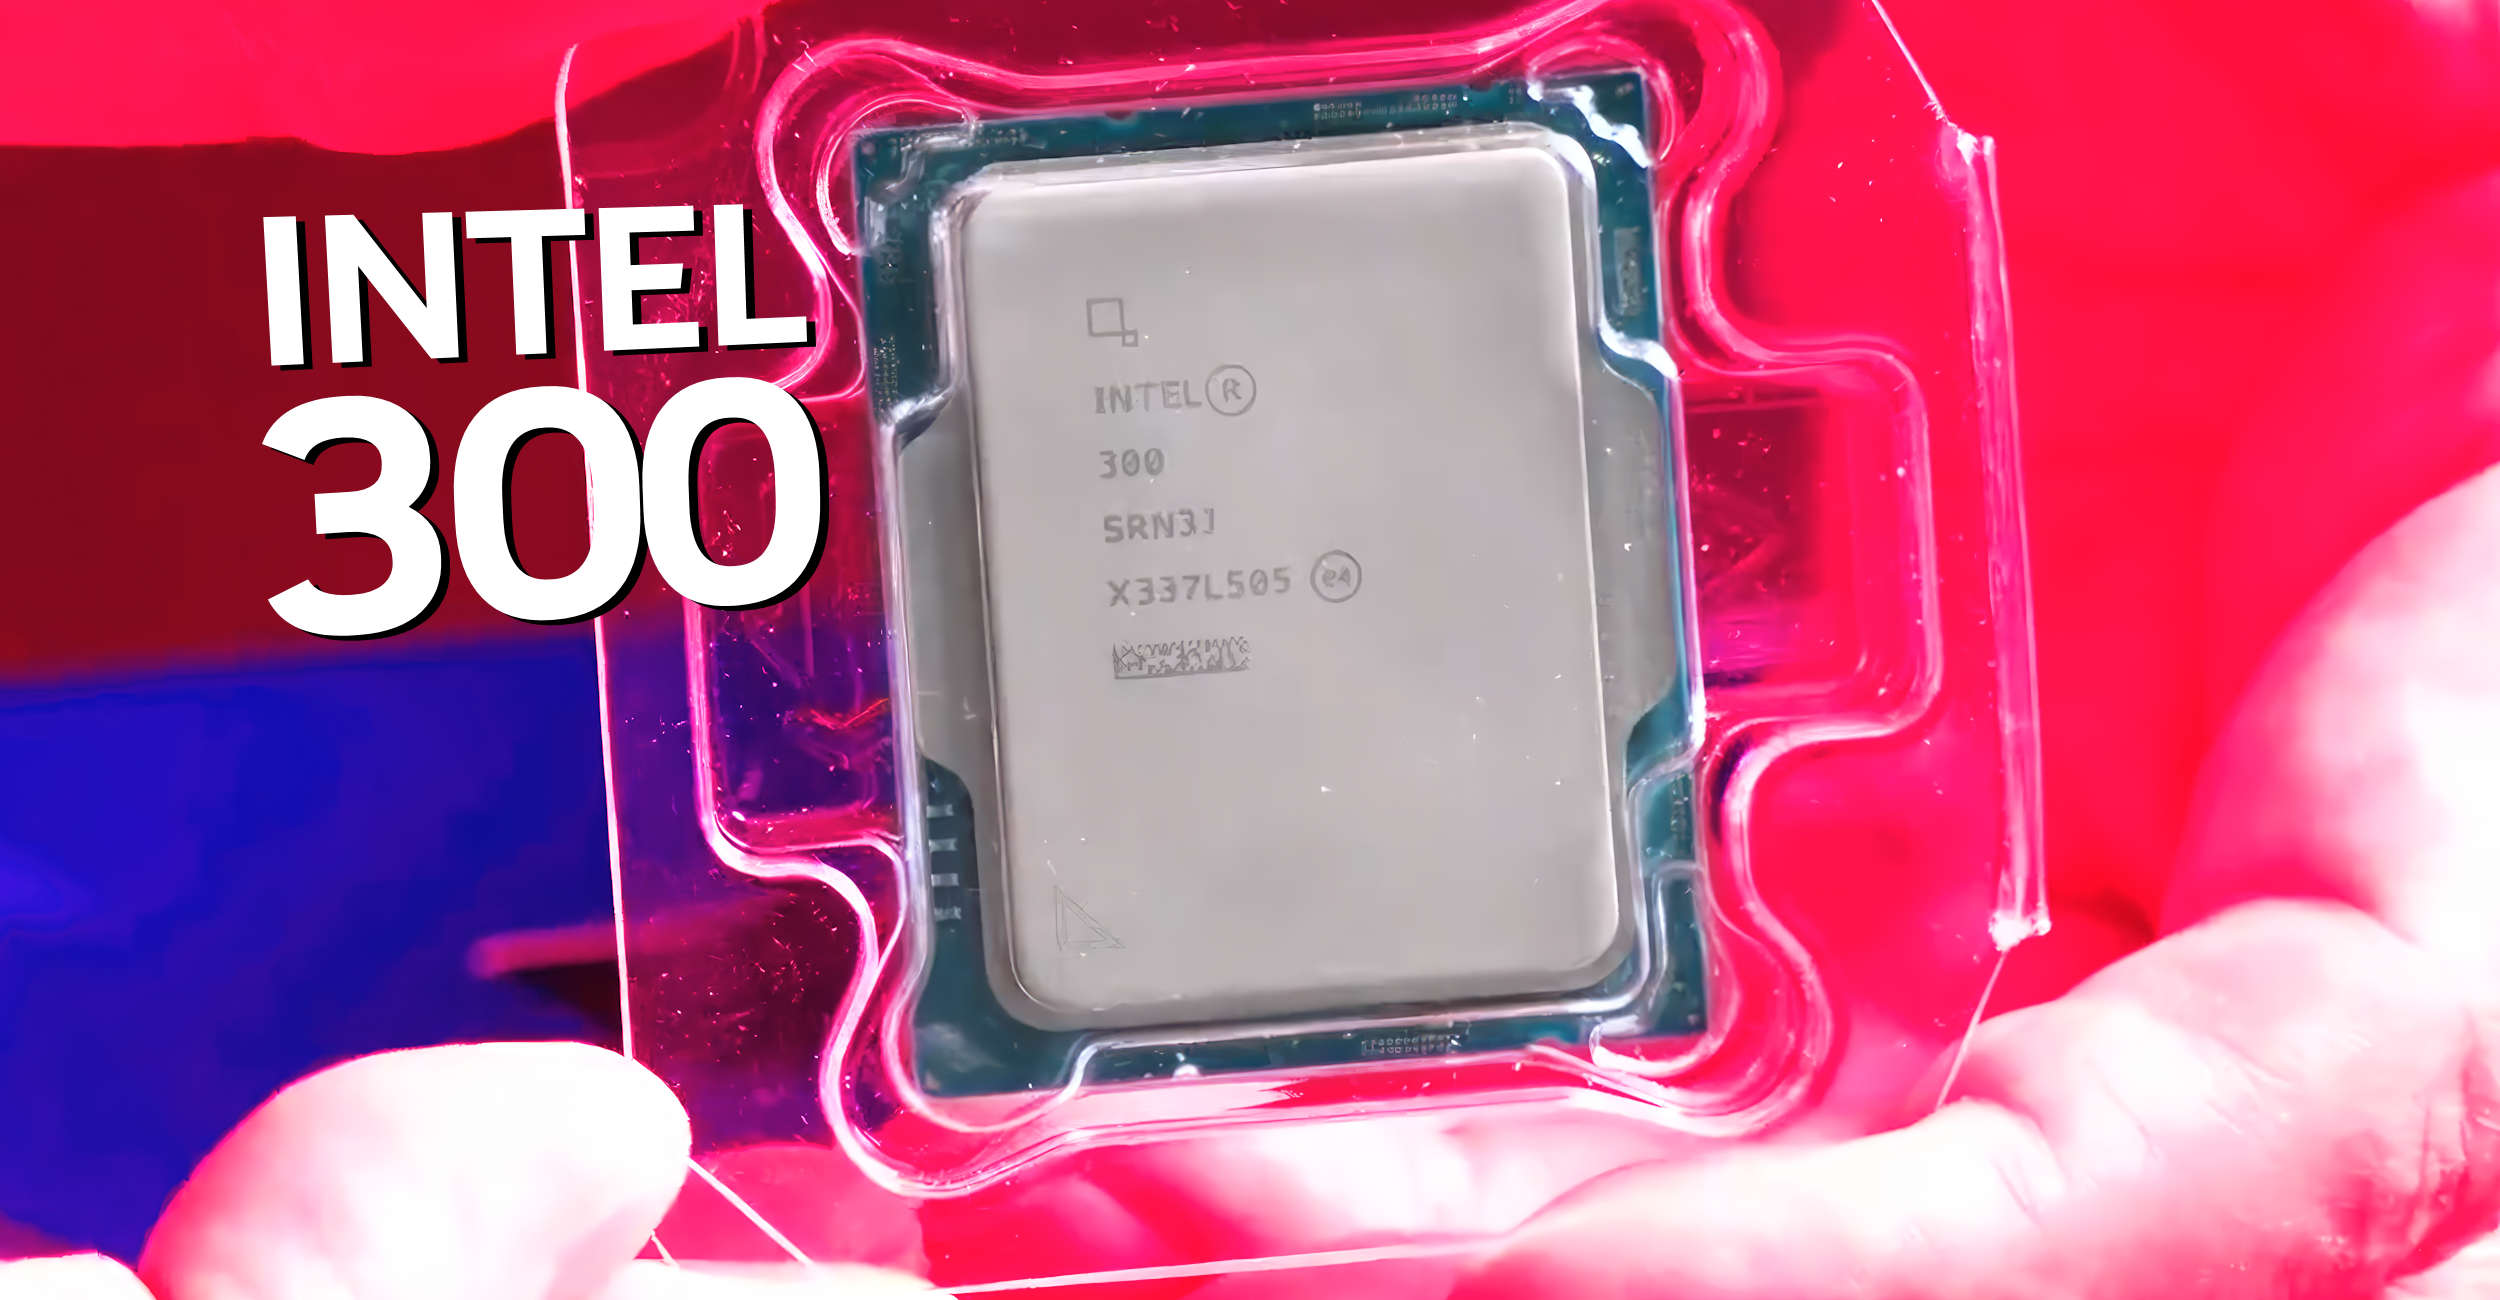 MSI Intel Core i7-14700KF 3.4 GHz 20-Core LGA 1700 Processor 